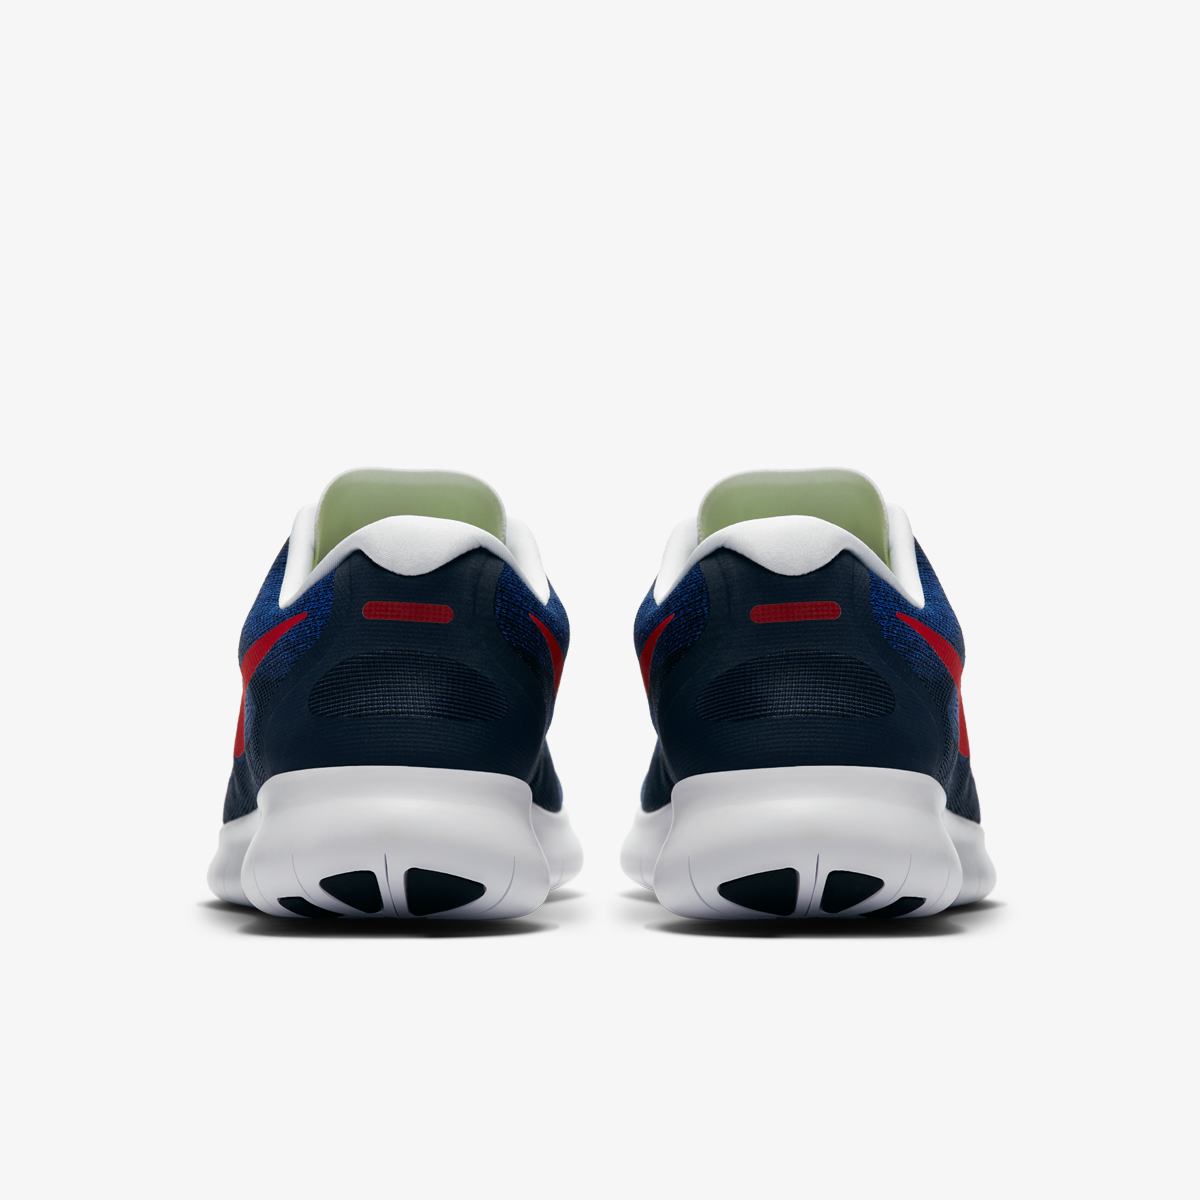 Кроссовки для бега Nike FREE RN 2017 